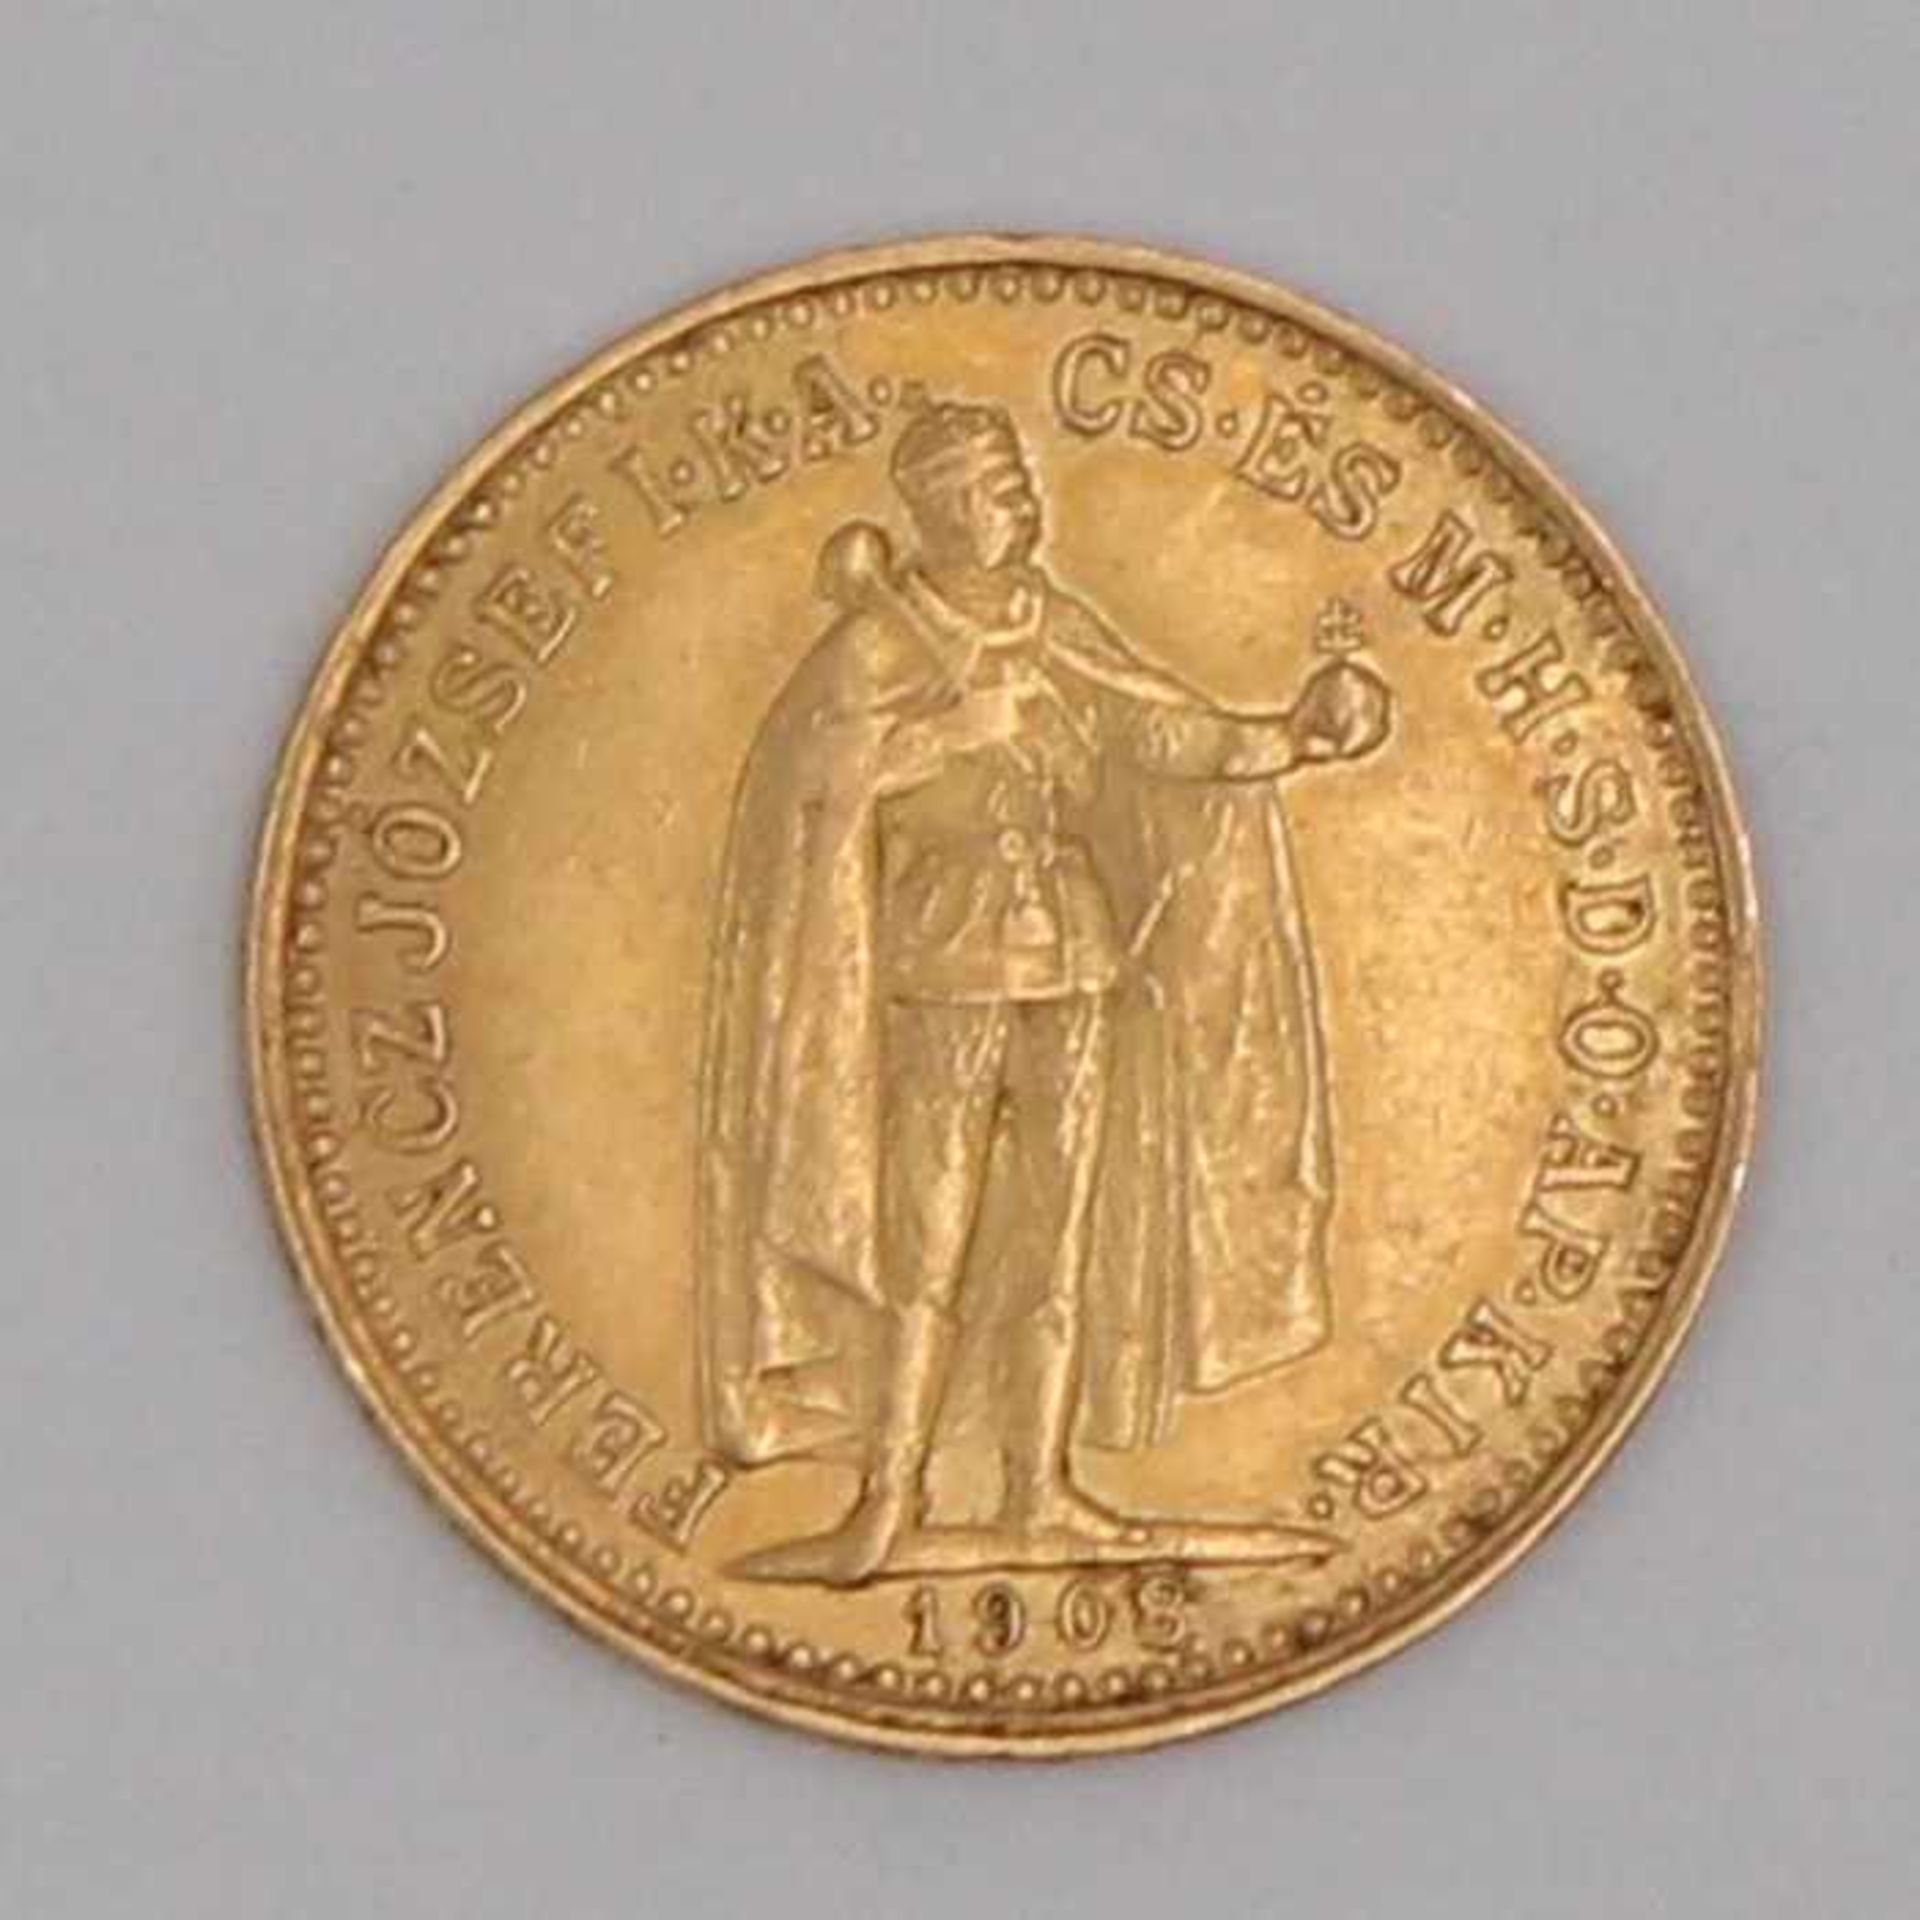 Gold - Ungarn 10 KronenFranz Joseph, 1908, ca. 3,4 g, RK, vz